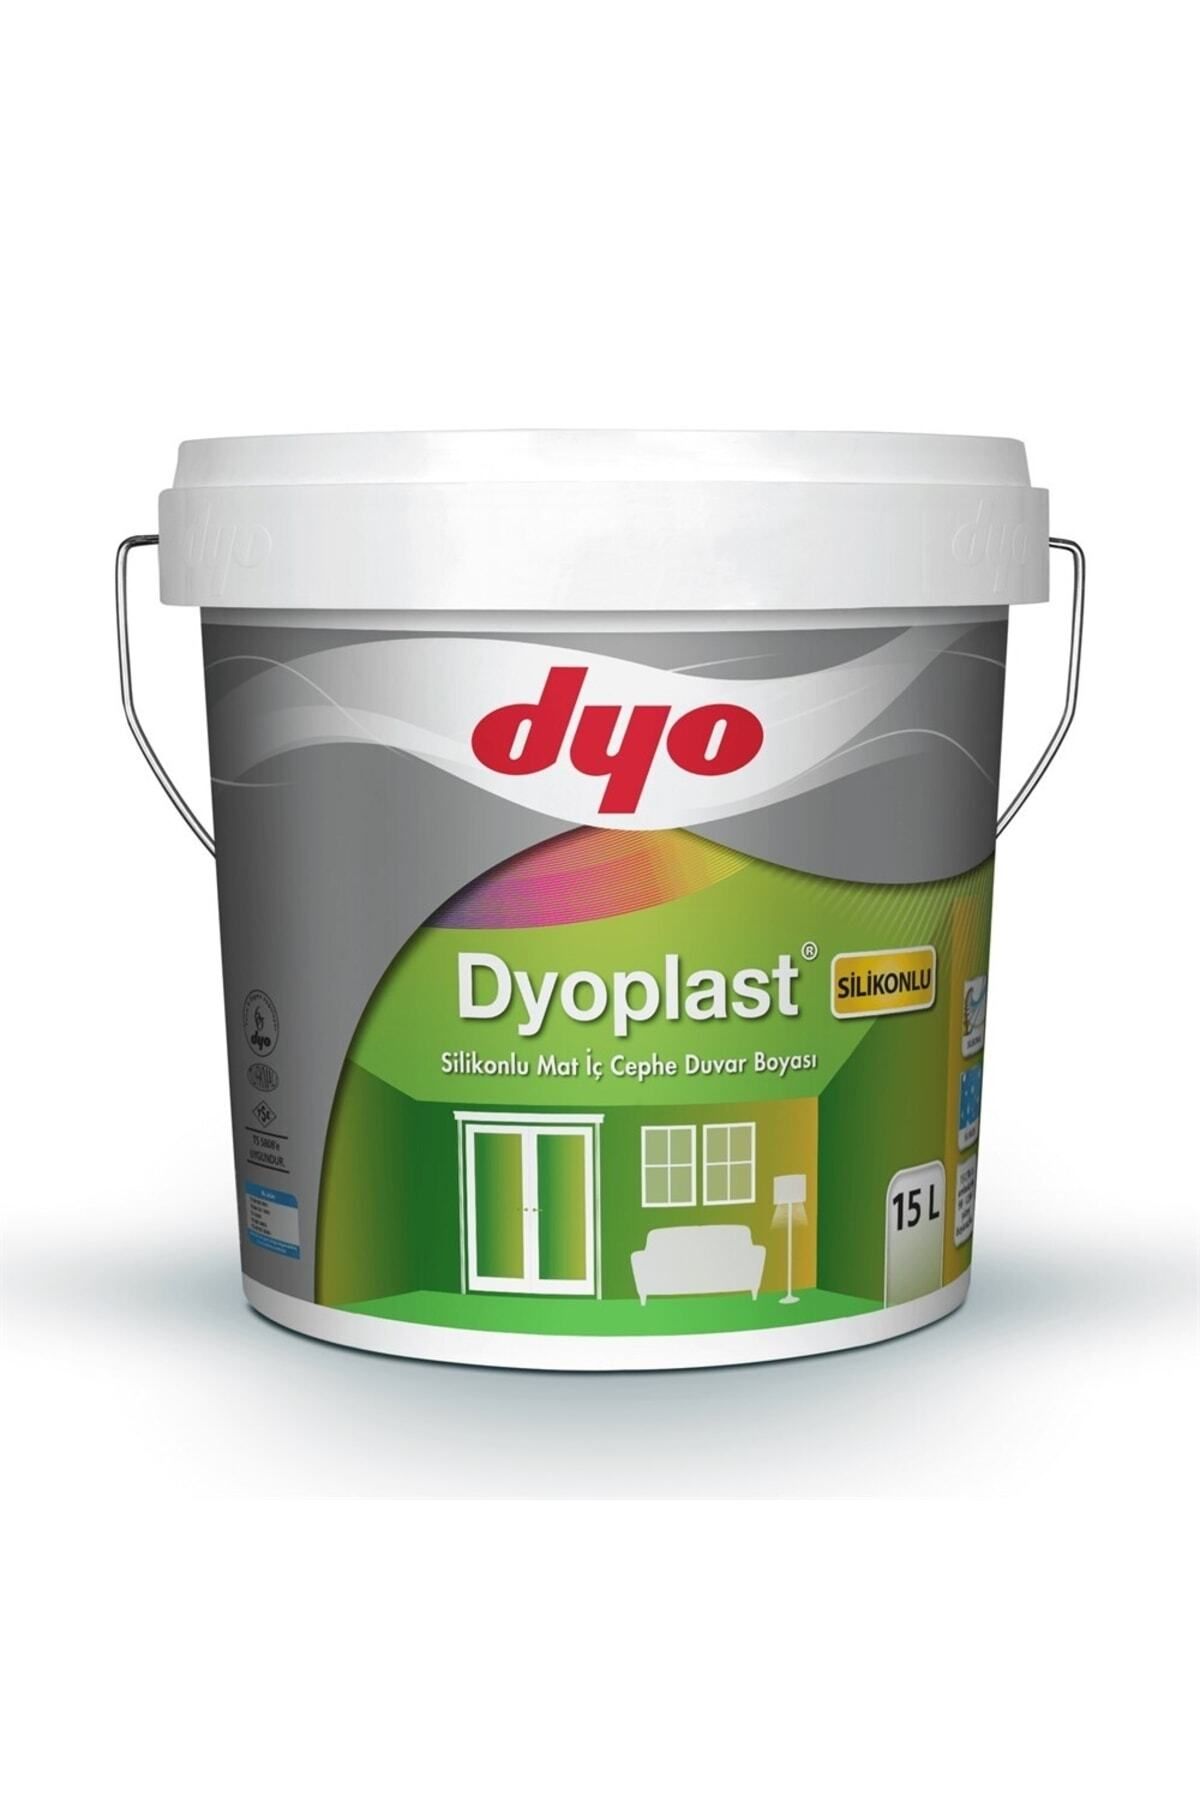 Dyo Plast Silikonlu Mat Iç Cephe Duvar Boyası 15 Lt (20kg)